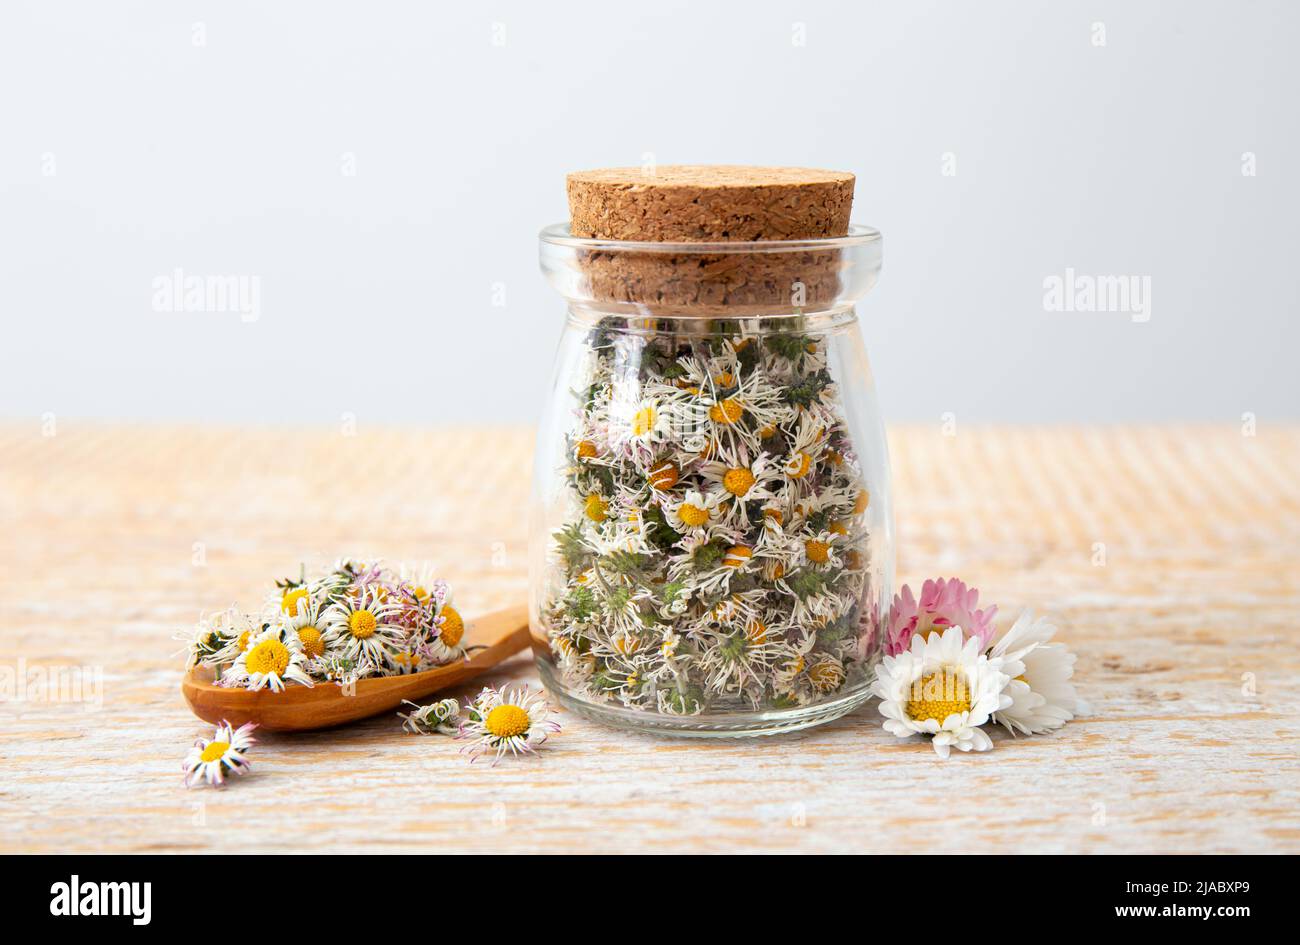 Planta medicinal herbaria seca Common Daisy, también conocida como Bellis perennis. Flores secas en tarro de vidrio y cuchara de madera, listas para hacer té de hierbas Foto de stock